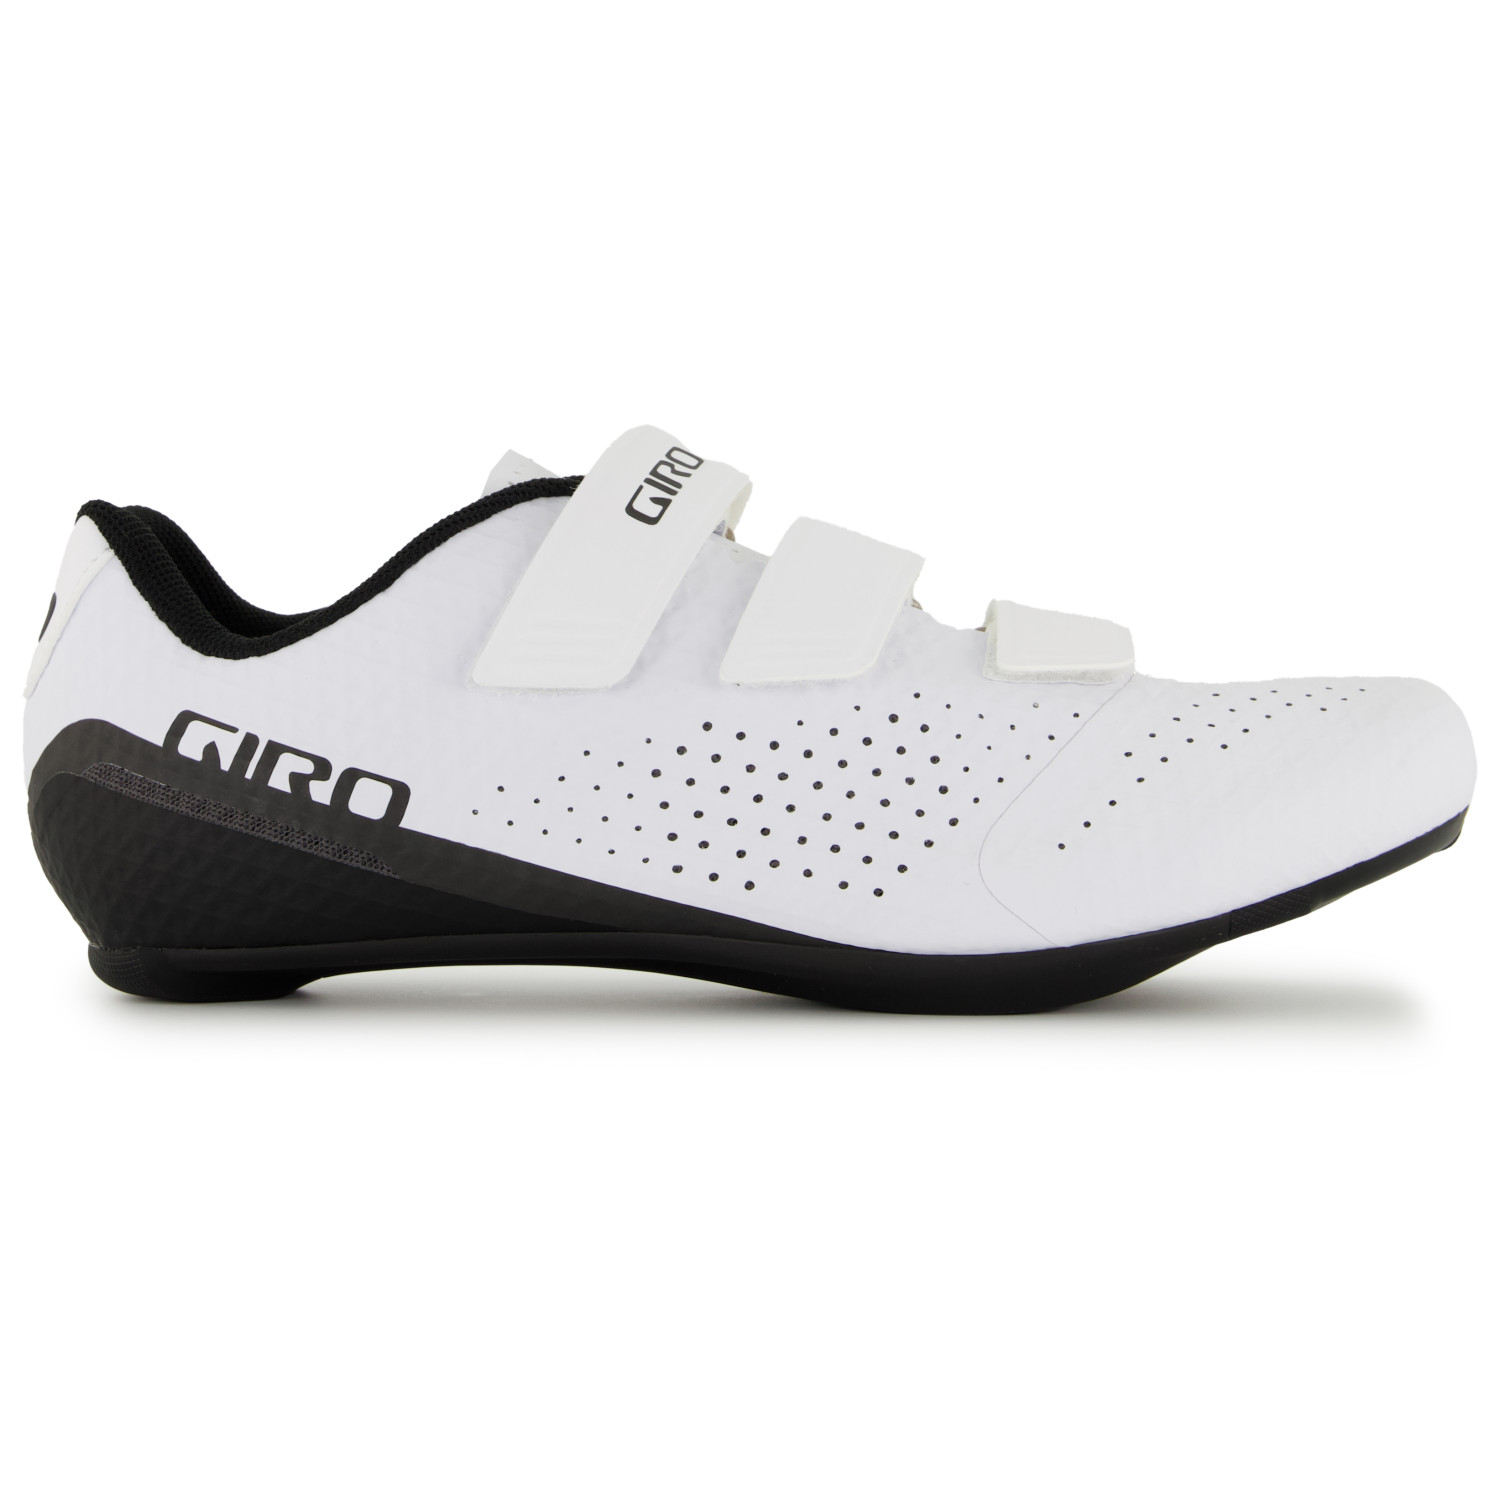 Велосипедная обувь Giro Giro Stylus, белый велосипедная обувь cadet женская giro черный